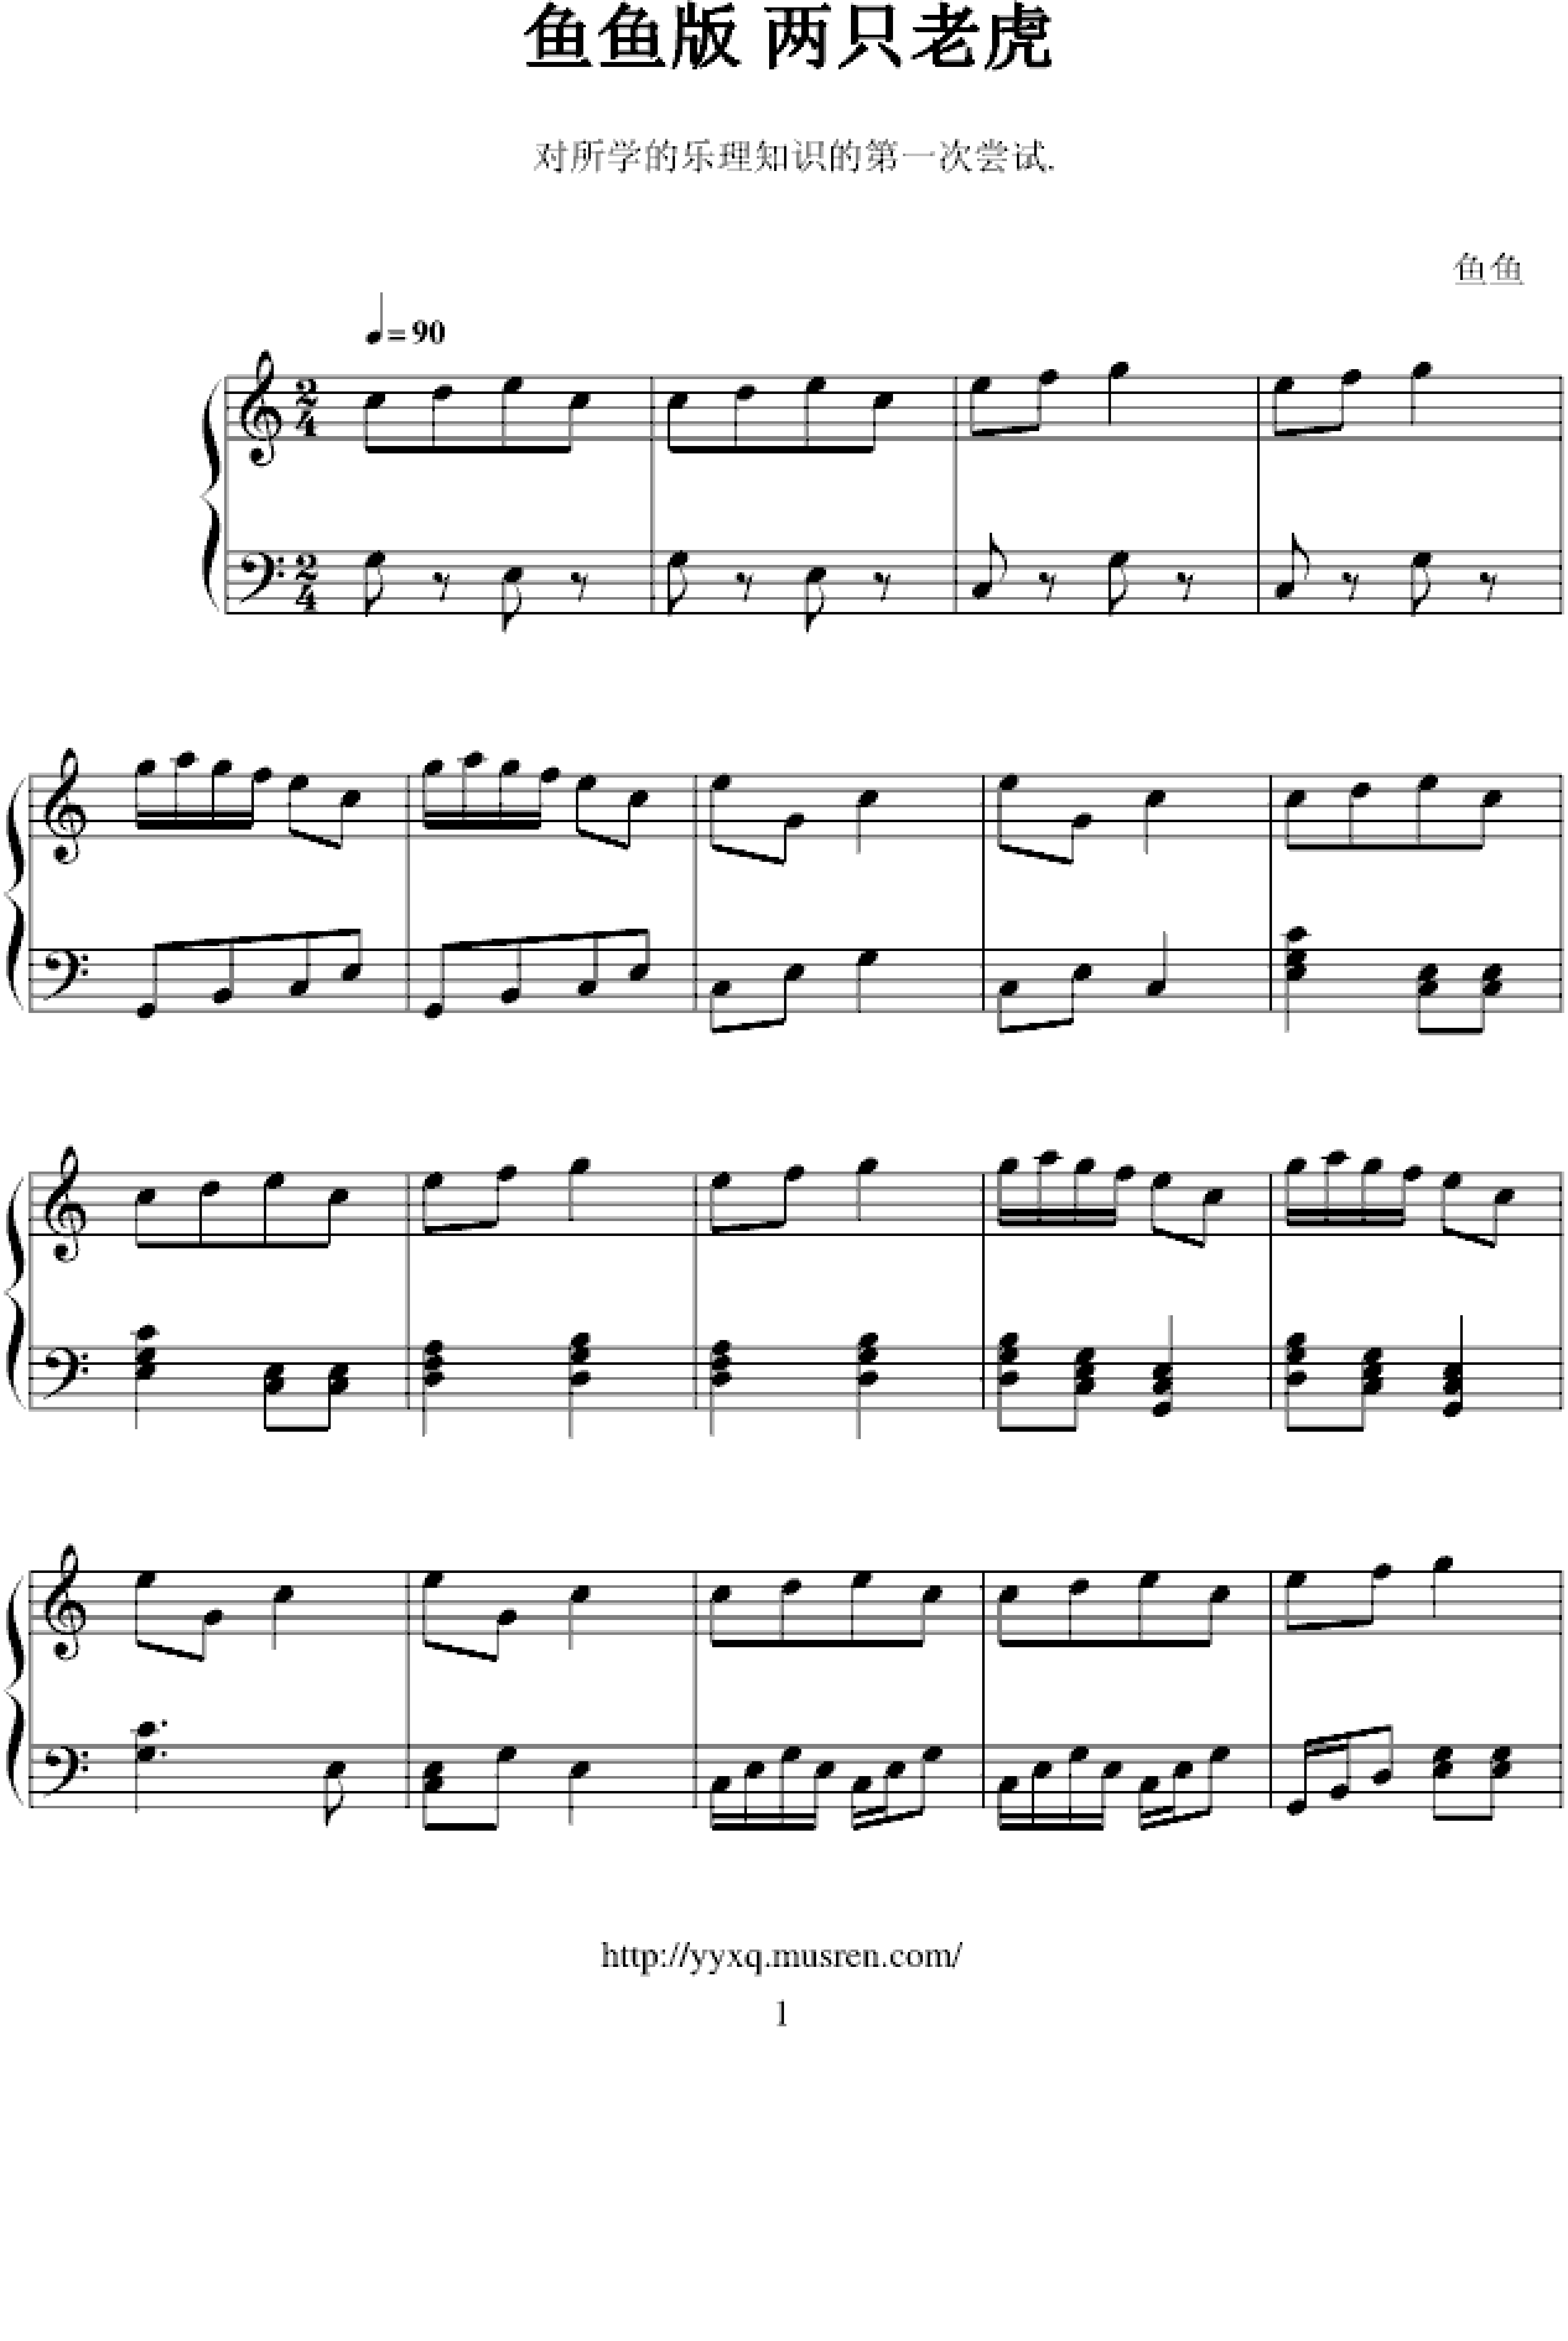 两只老虎（简单版）五线谱预览2-钢琴谱文件（五线谱、双手简谱、数字谱、Midi、PDF）免费下载